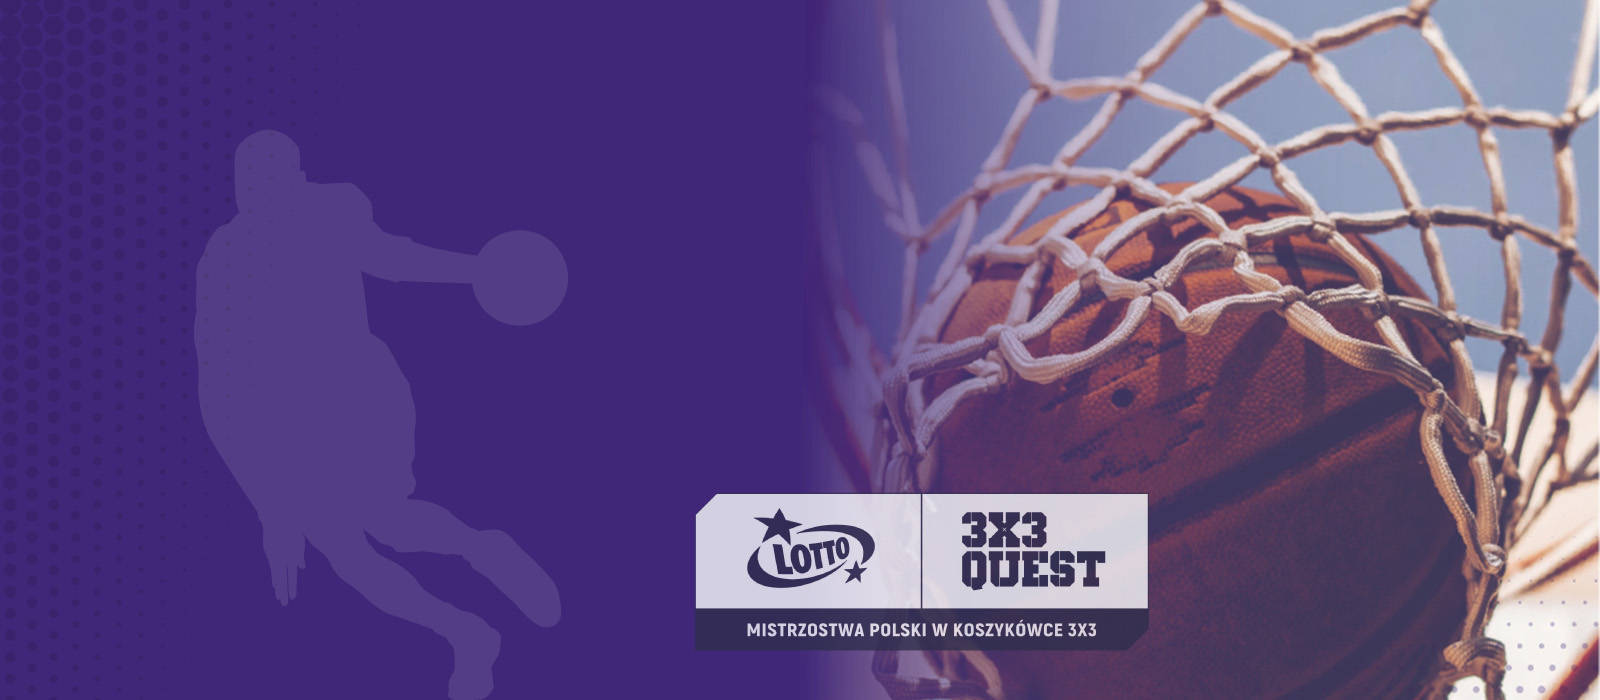 Lotto Quest 3x3 Rzeszów / Mistrzostwa Polski 2022 w koszykówce 3x3 - 1